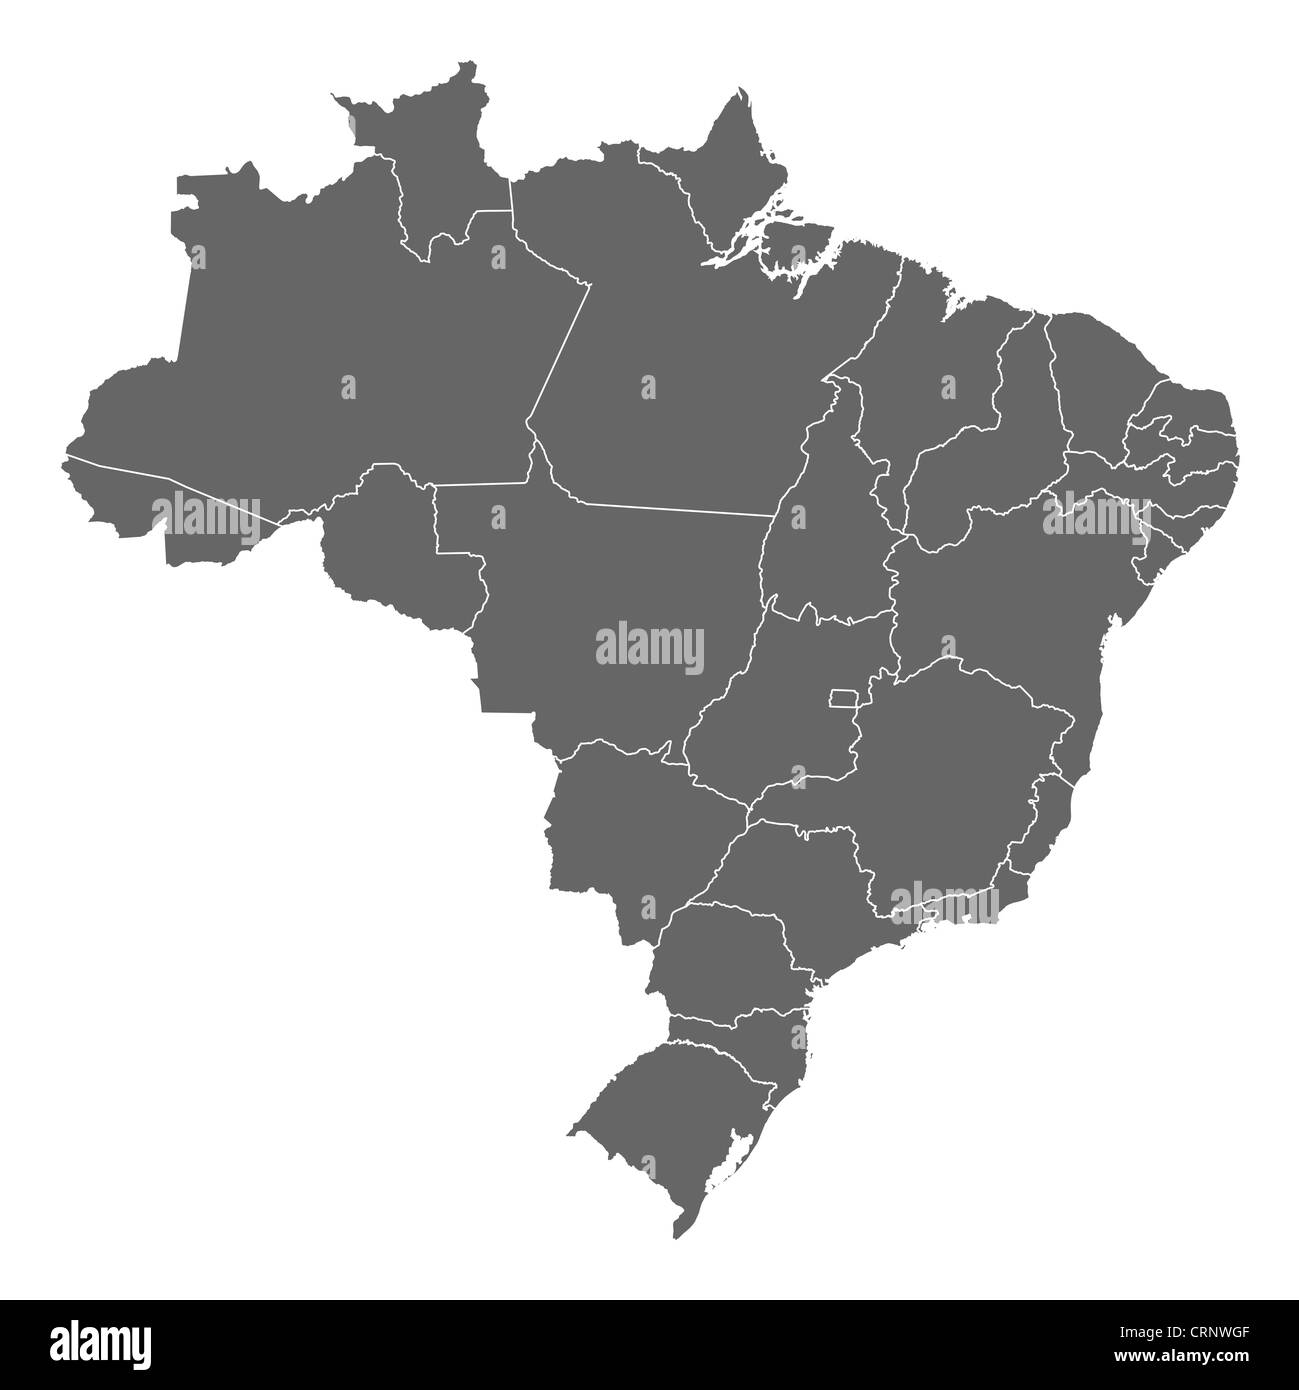 Mappa politica del Brasile con i diversi Stati membri. Foto Stock